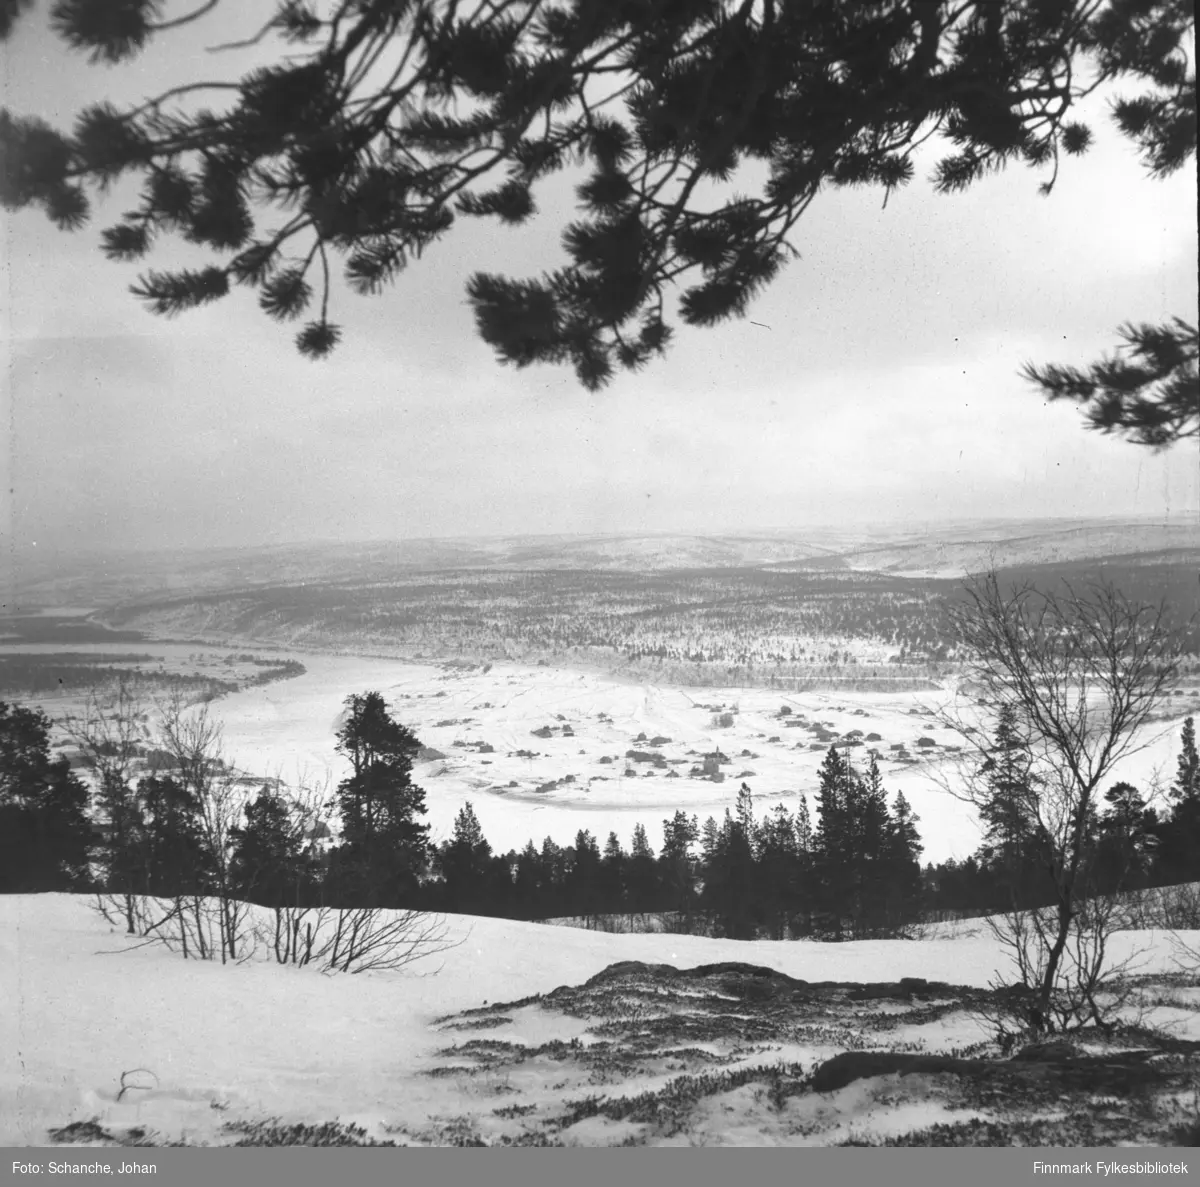 Oversiktsbilder over Karasjok tatt fra fjellet ned mot bygda i dalen. Fotografen har stått under en stor furu, furugrein henger over landskapet på bildet.